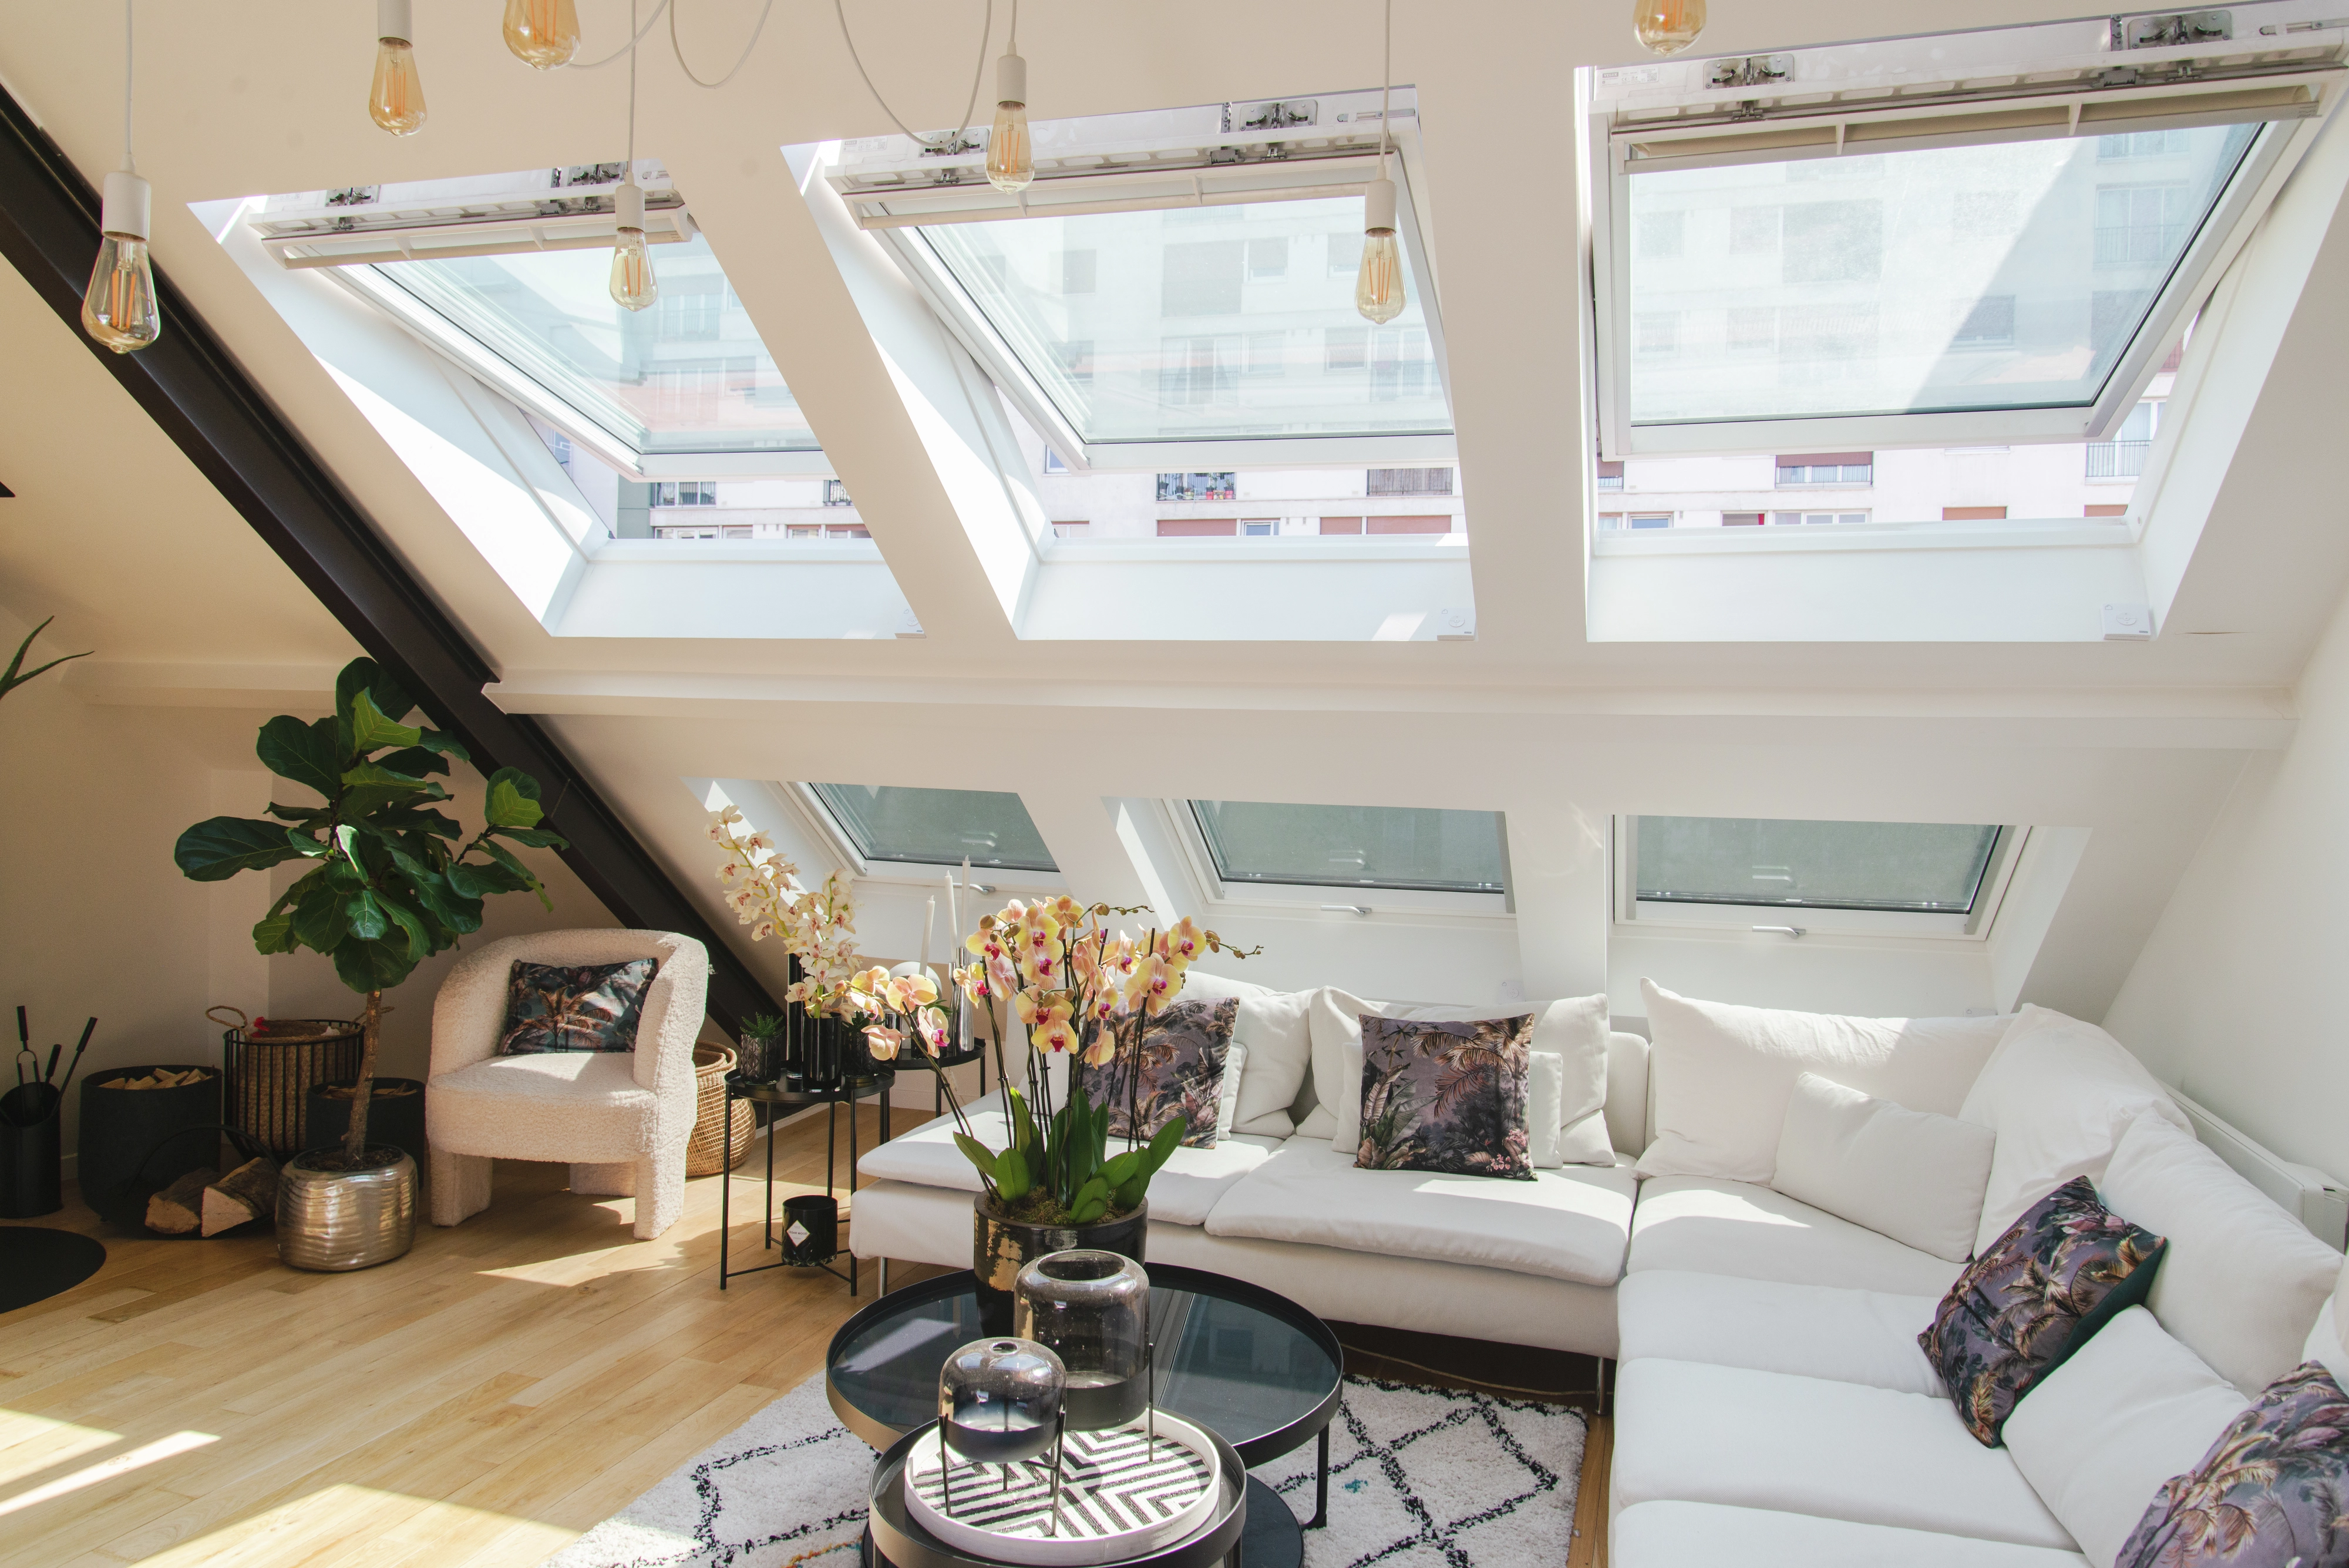 Salon de comble confortable avec lumière naturelle provenant des fenêtres de toit VELUX, canapé blanc et plantes.